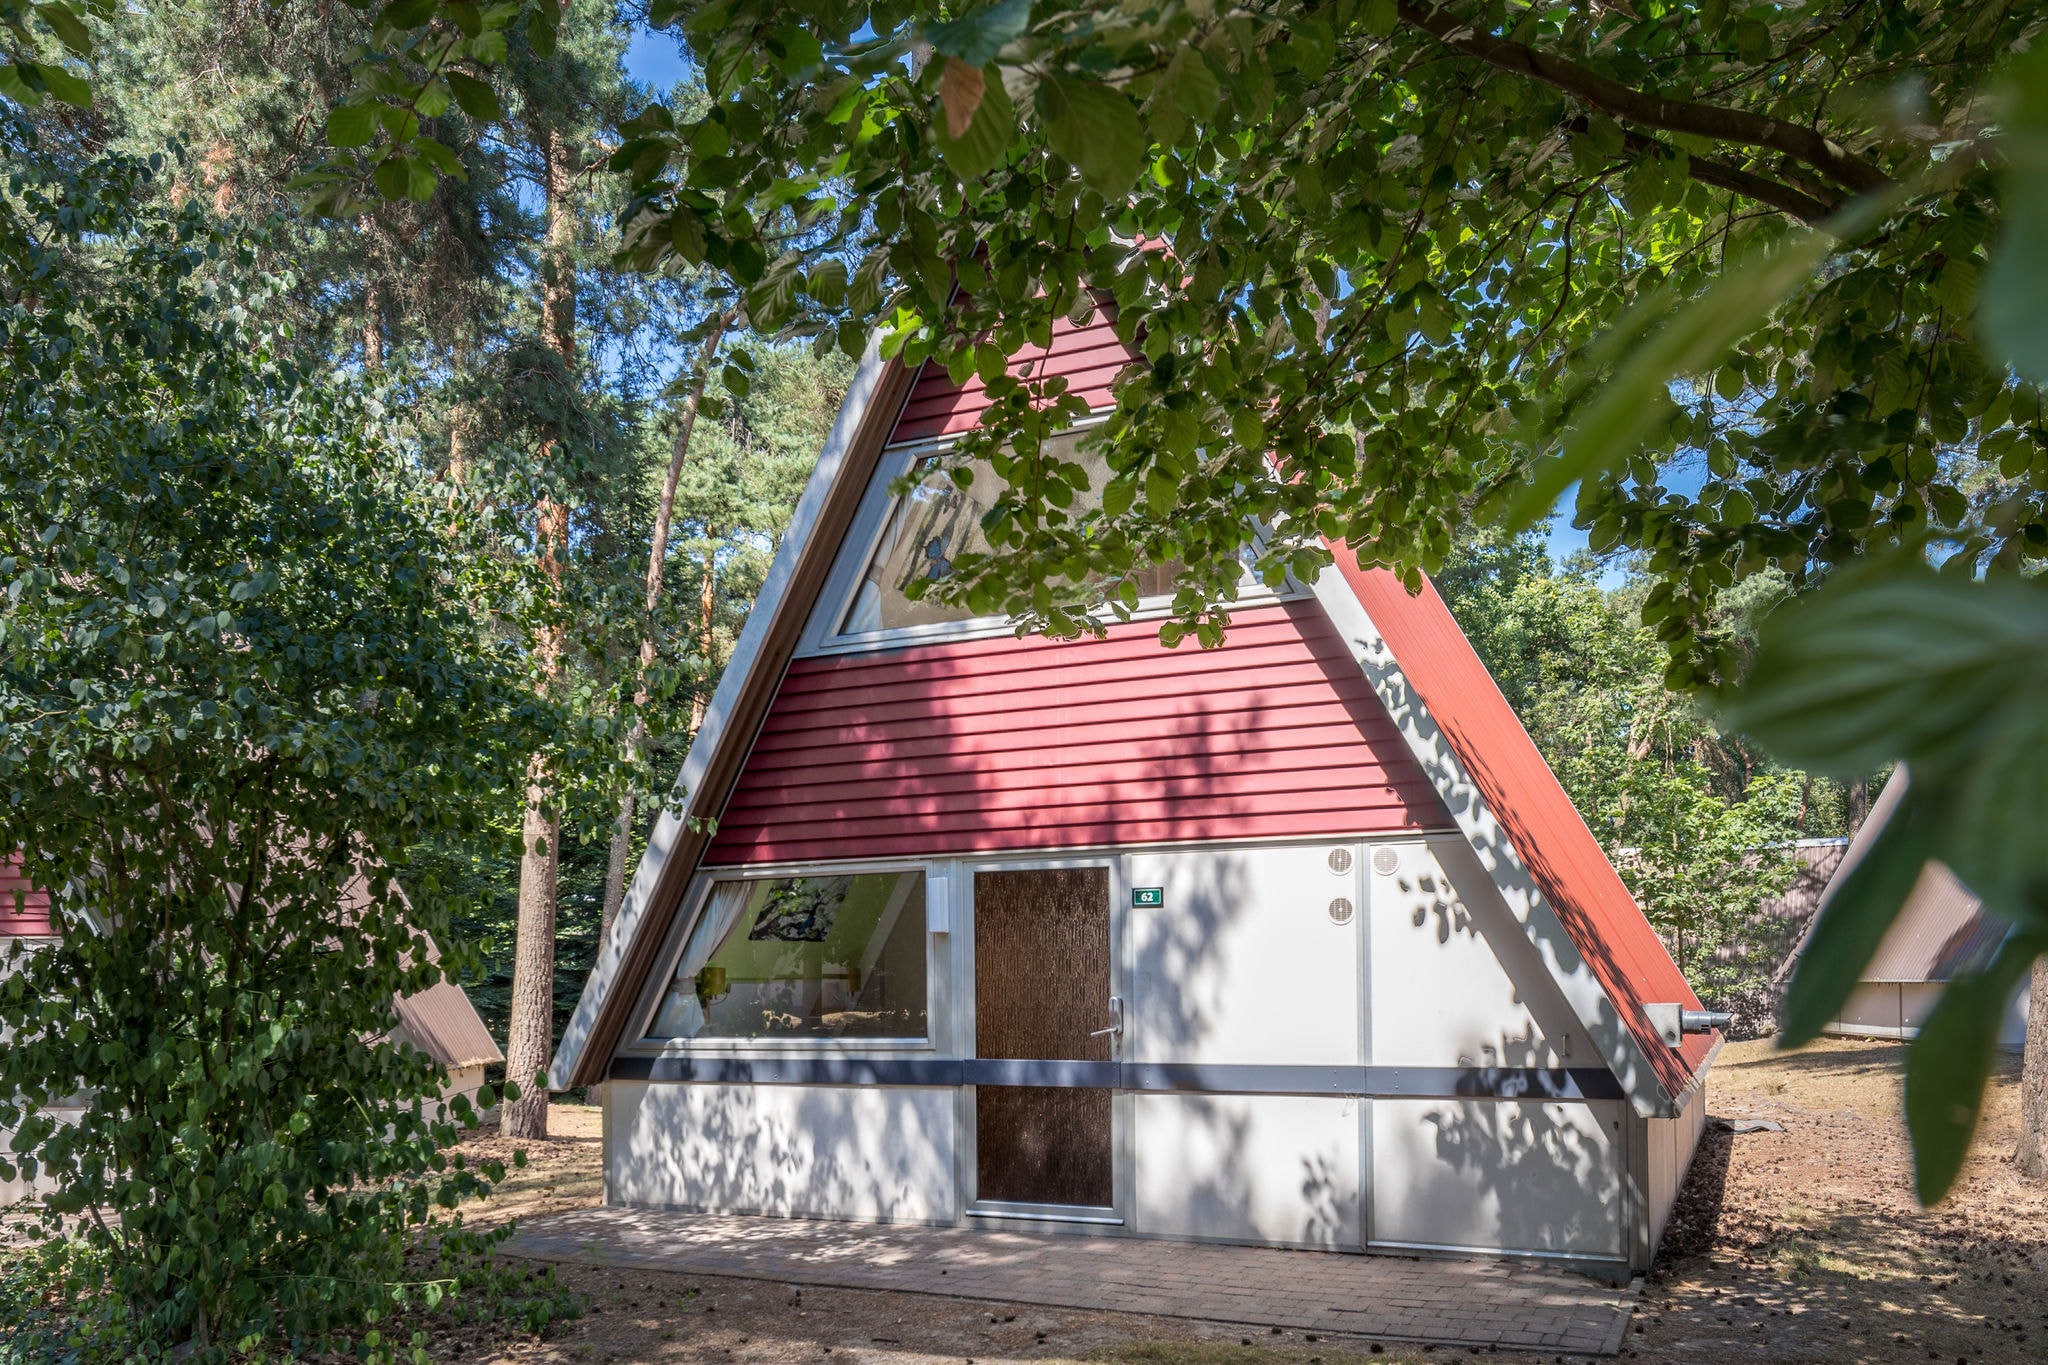 Gerestylde bungalow met afwasmachine, natuurrijke omgeving